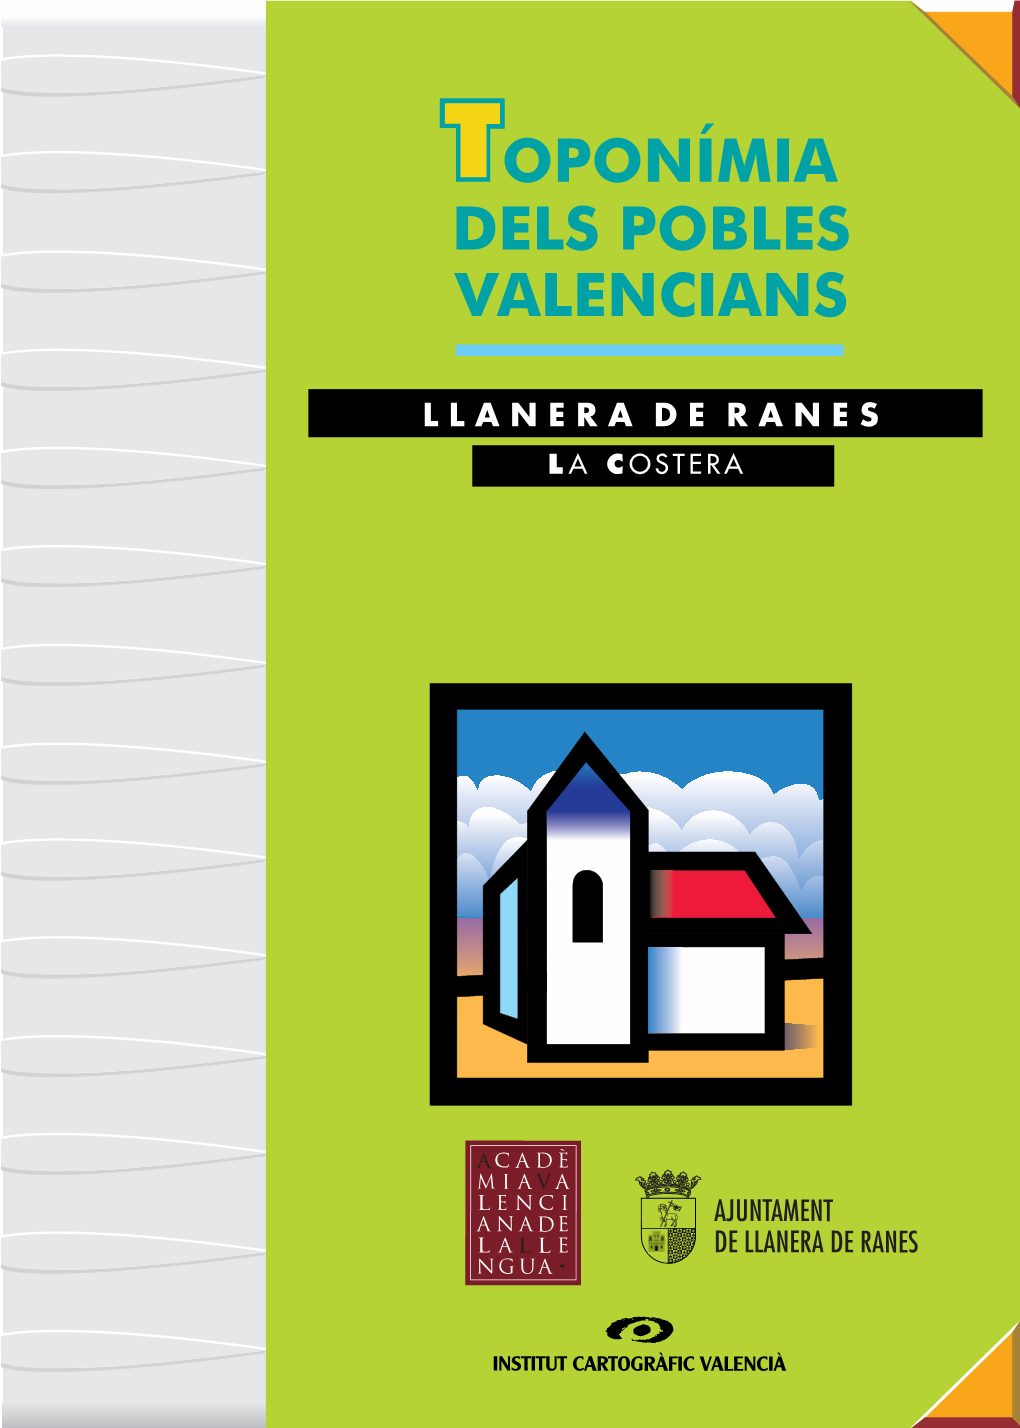 LLANERA DE RANES | Toponímia Dels Pobles Valencians